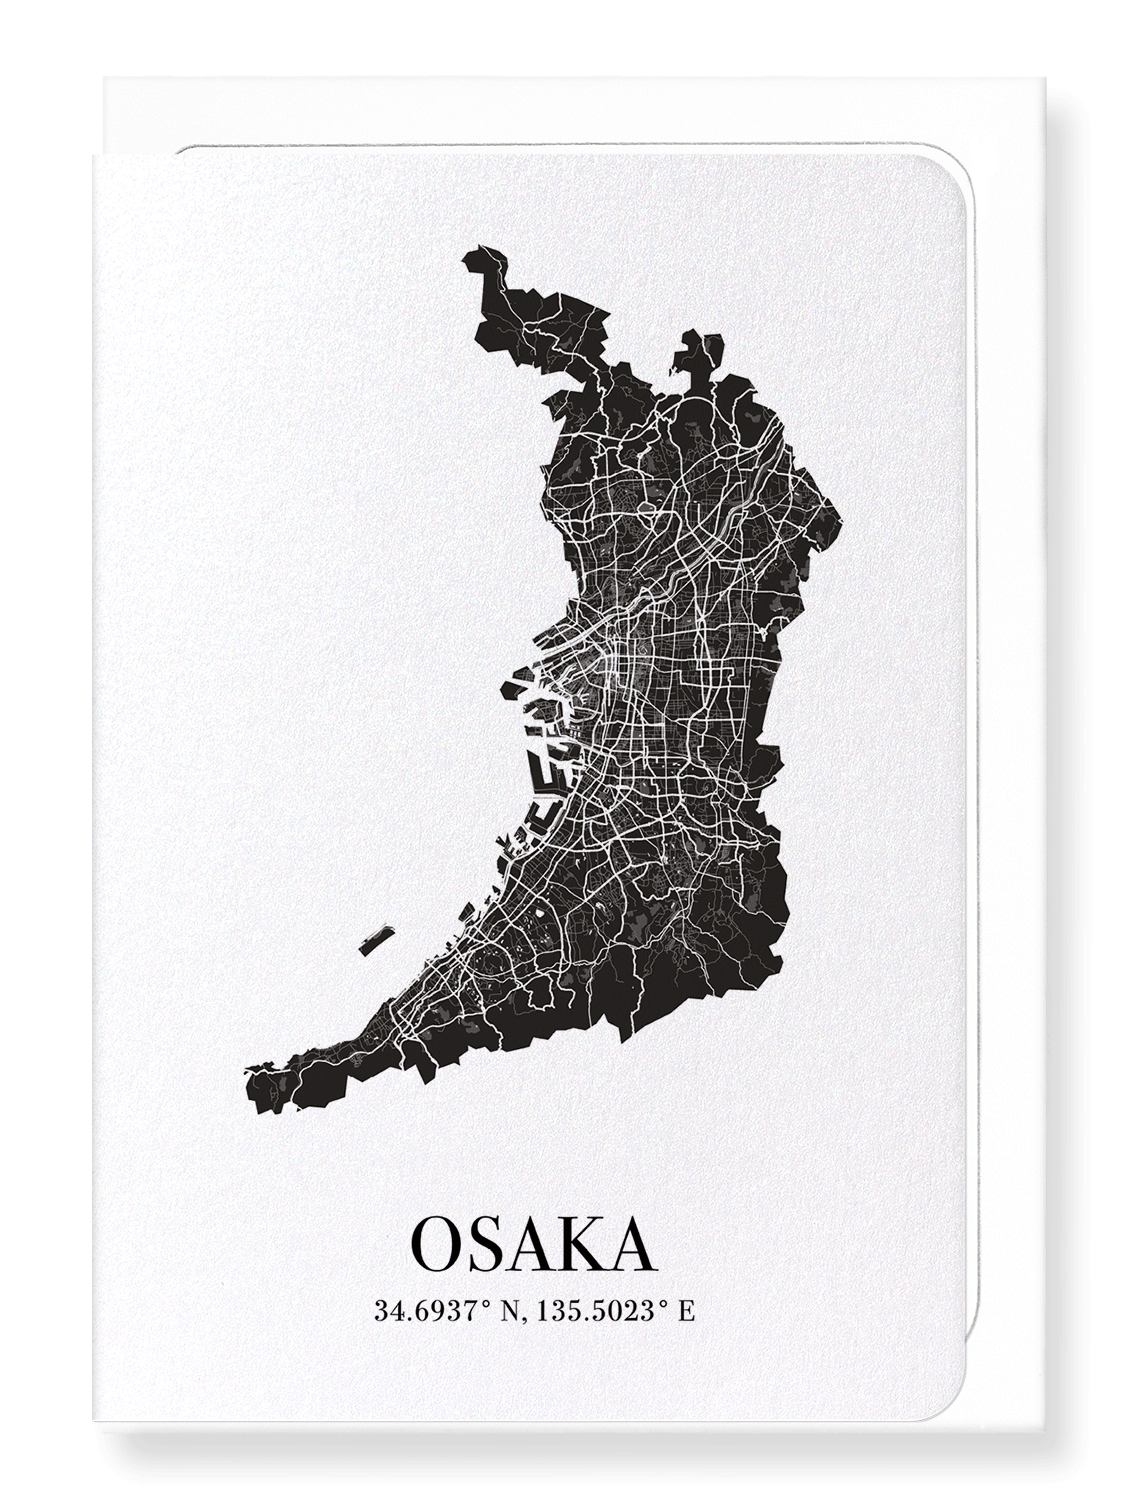 OSAKA CUTOUT: Map Cutout Greeting Card